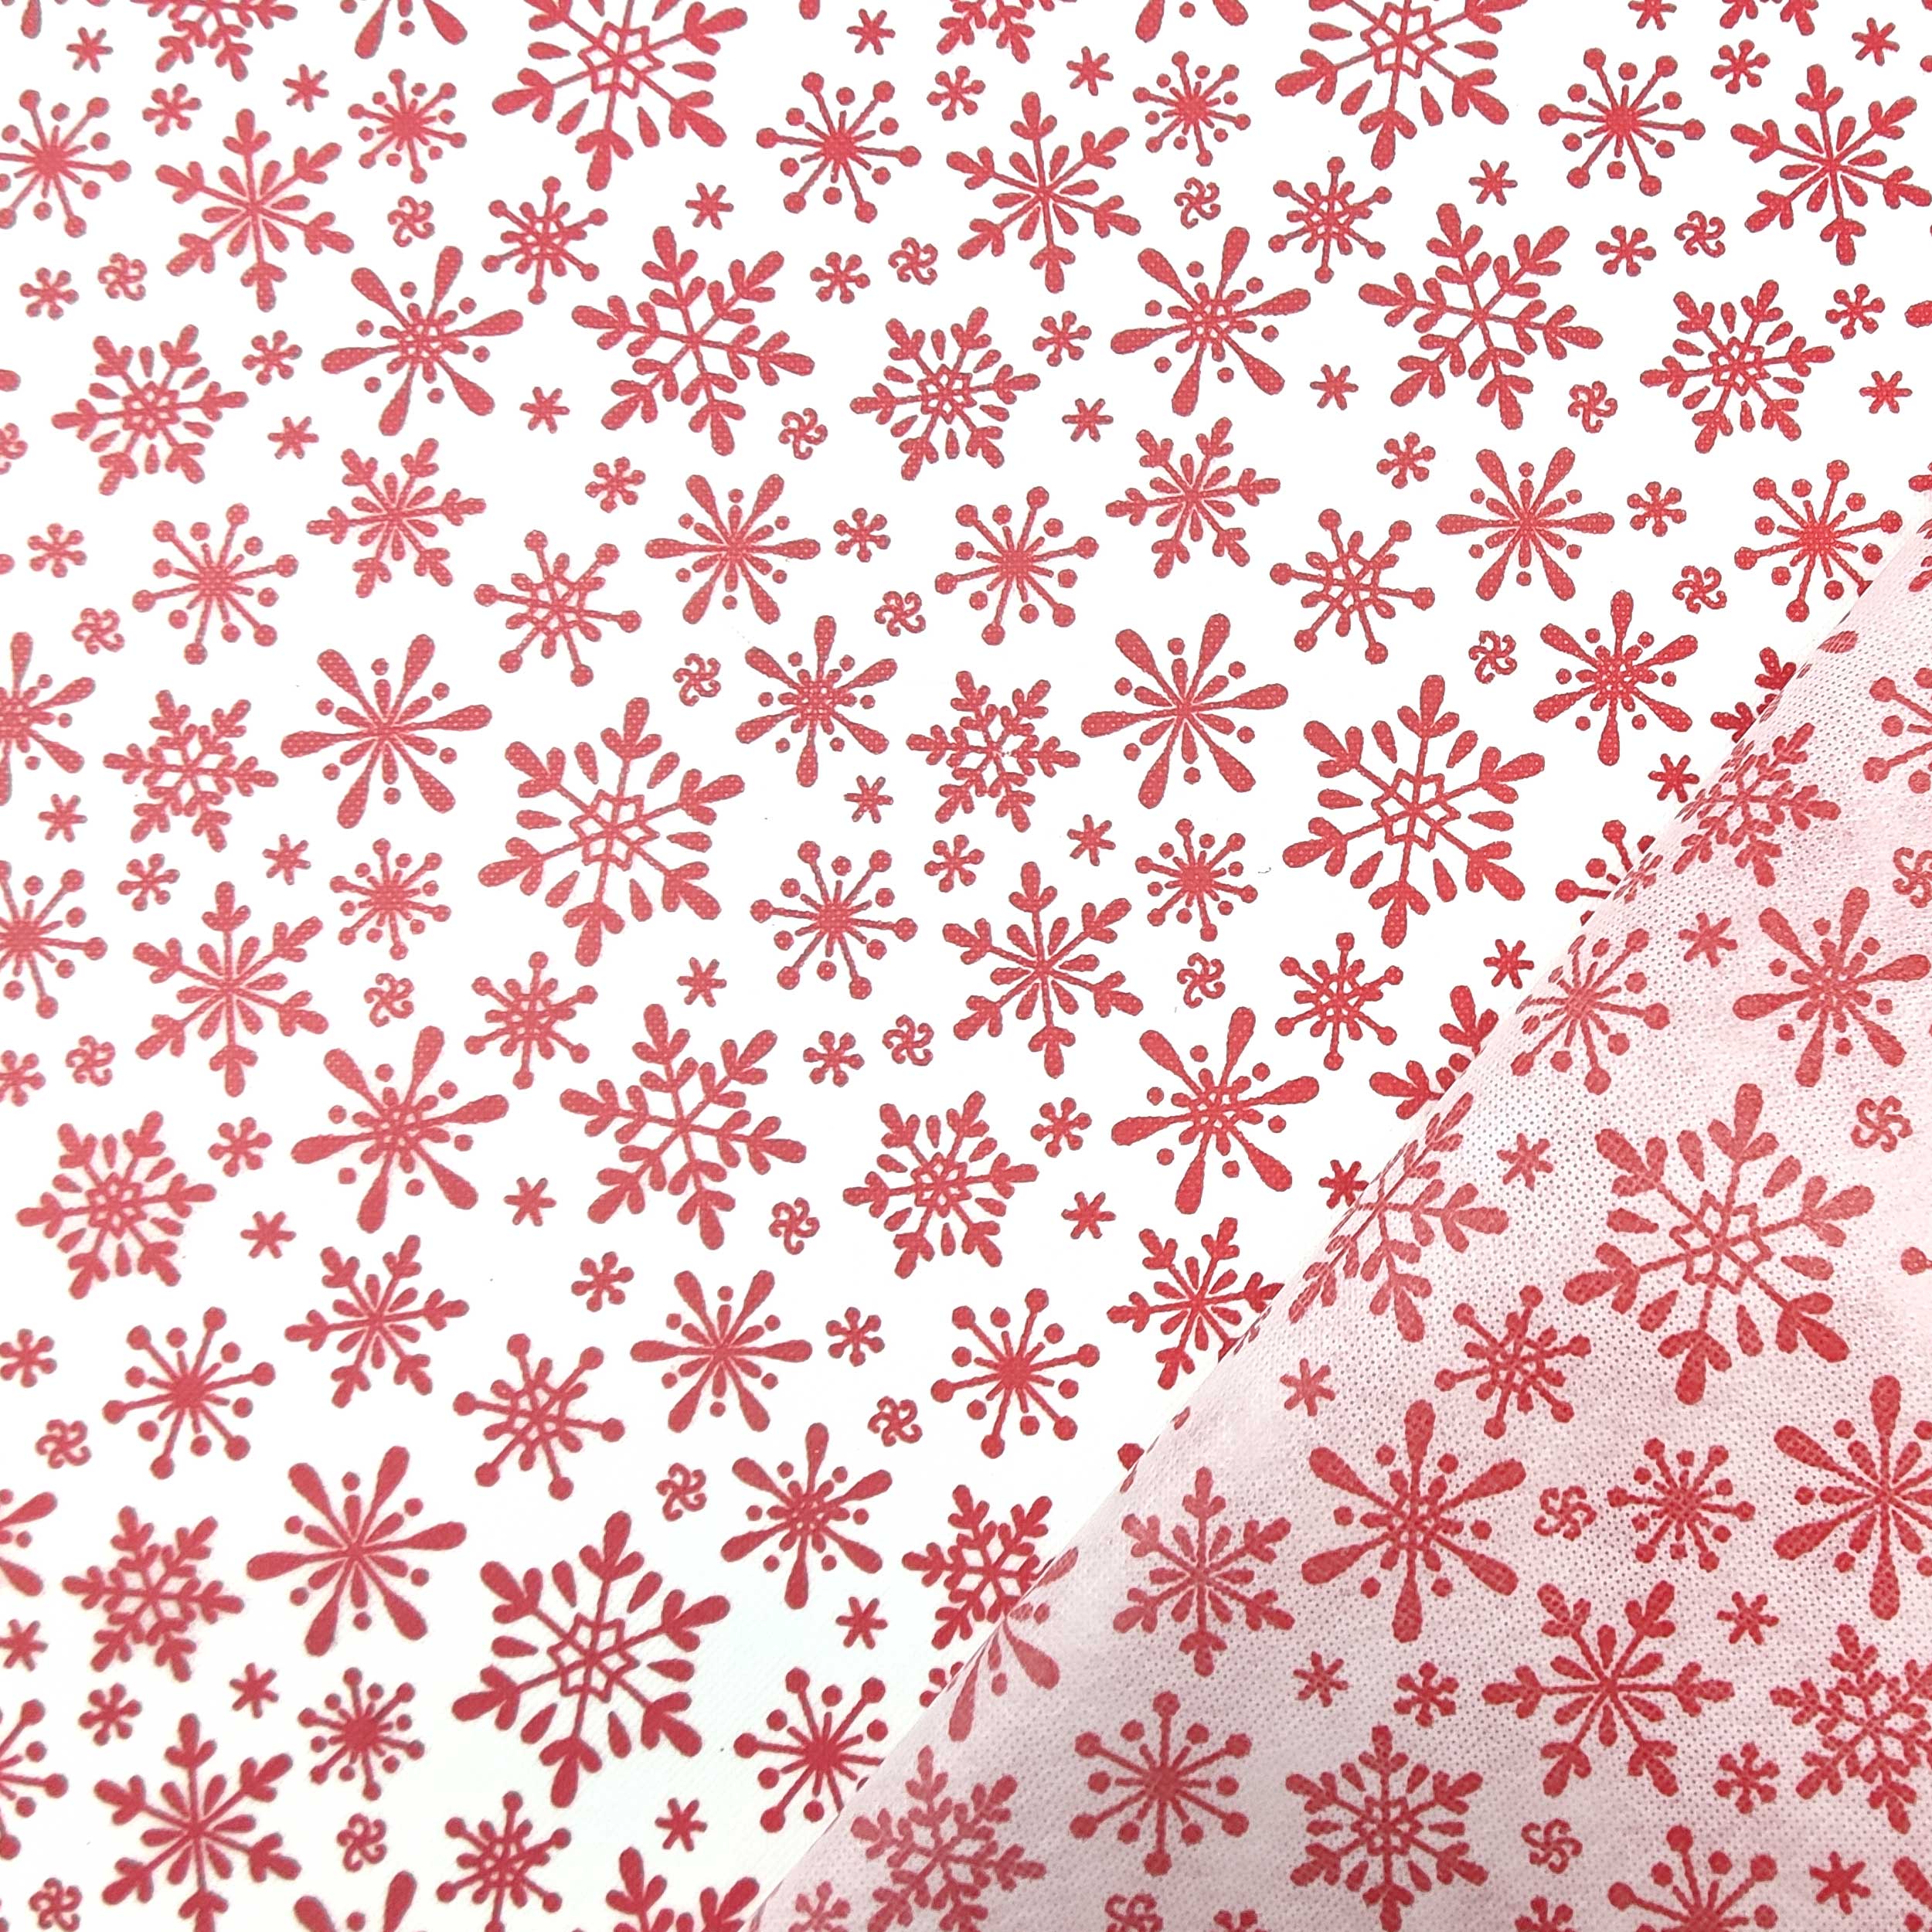 tessuto online in tnt bianco con fiocchi rosso